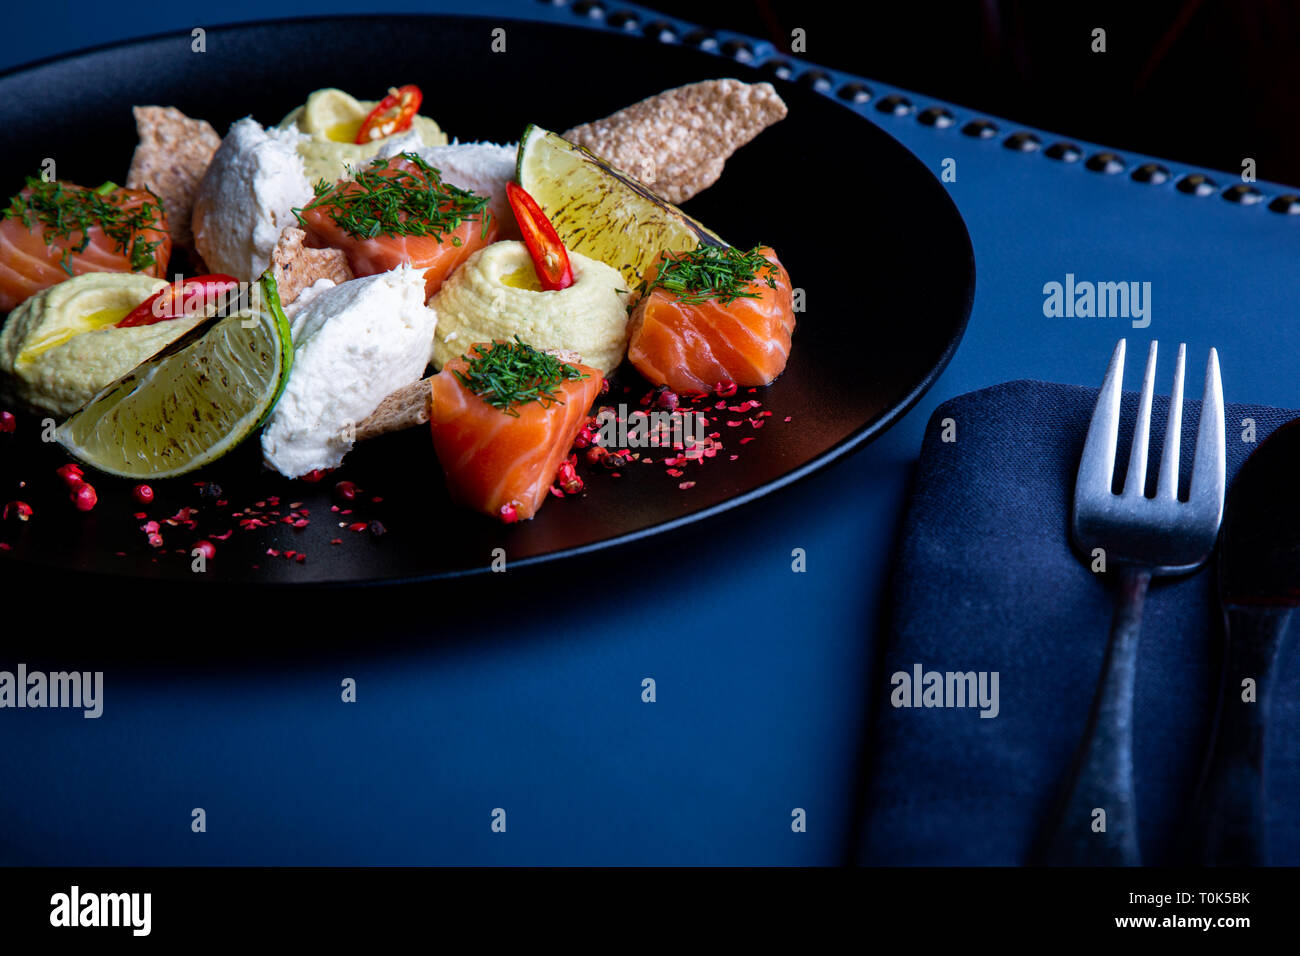 Délicieux avec du saumon et de la pate de l'hoummos dans le fond. Exclusif sur l'alimentation saine grand plateau noir libre Banque D'Images